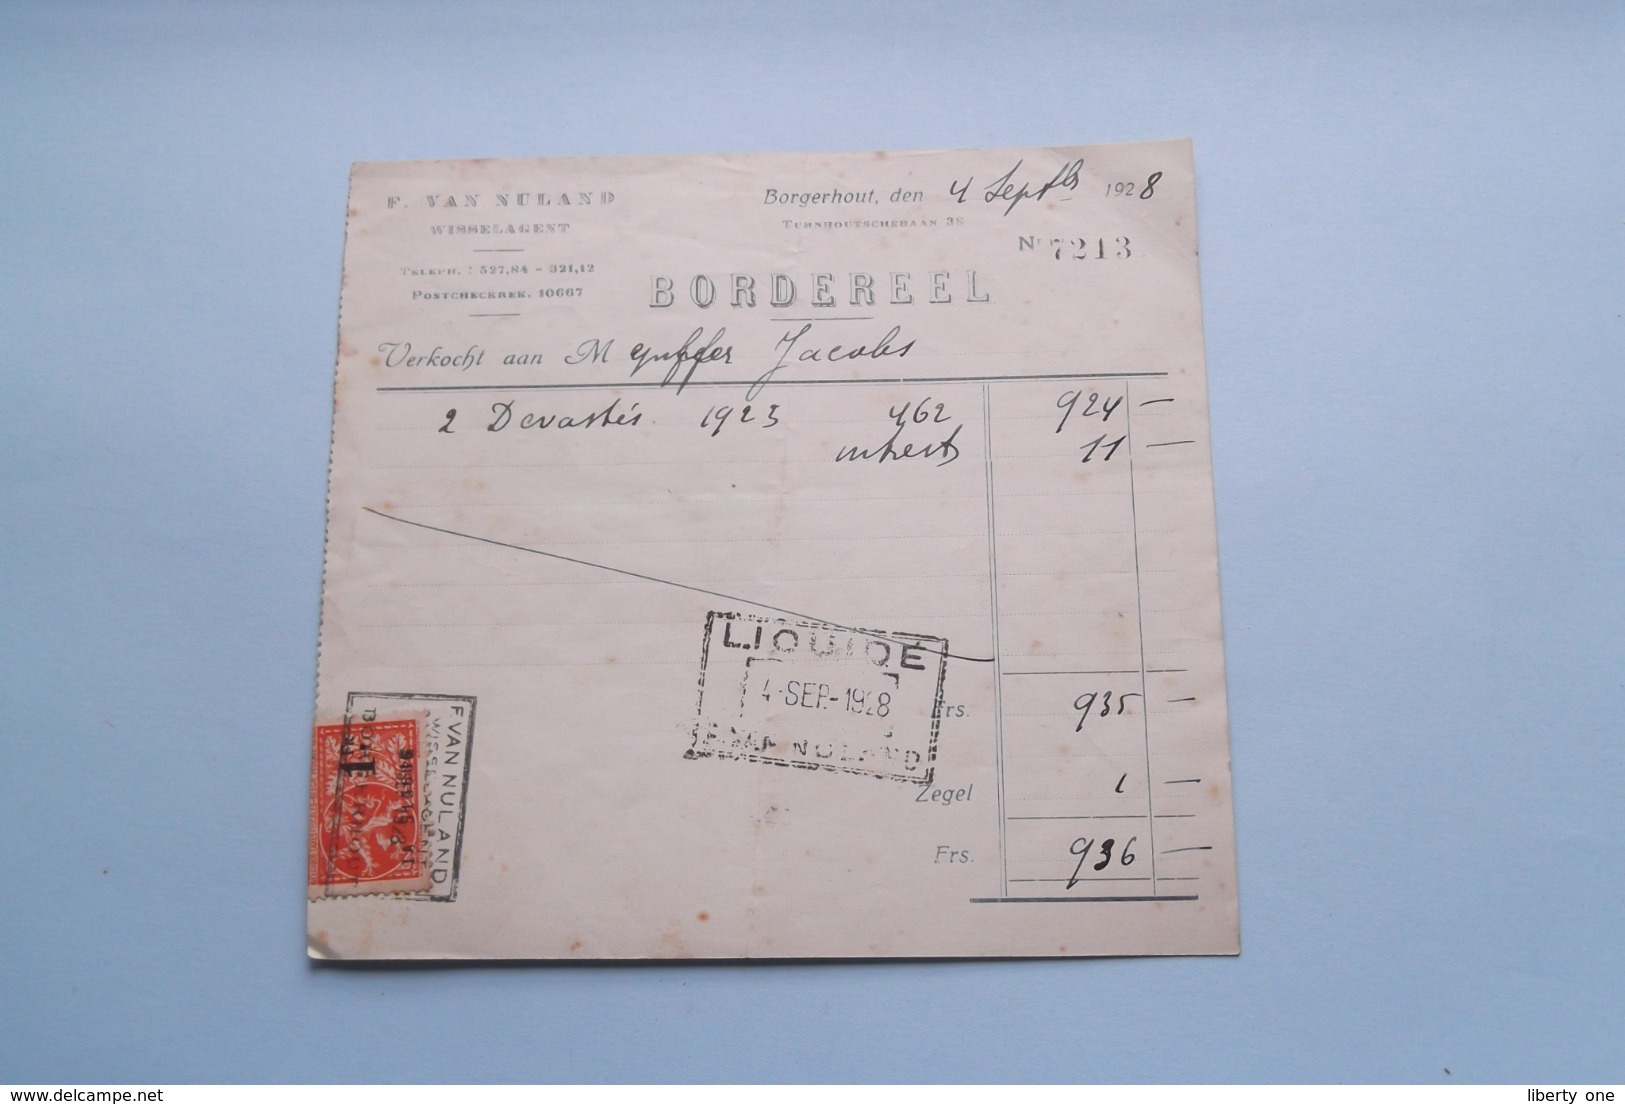 F. Van NULAND WISSELAGENT BORGERHOUT Antwerpen > BORDEREEL Anno 1928 ( Zie Foto's ) 1 Stuk ! - Banque & Assurance